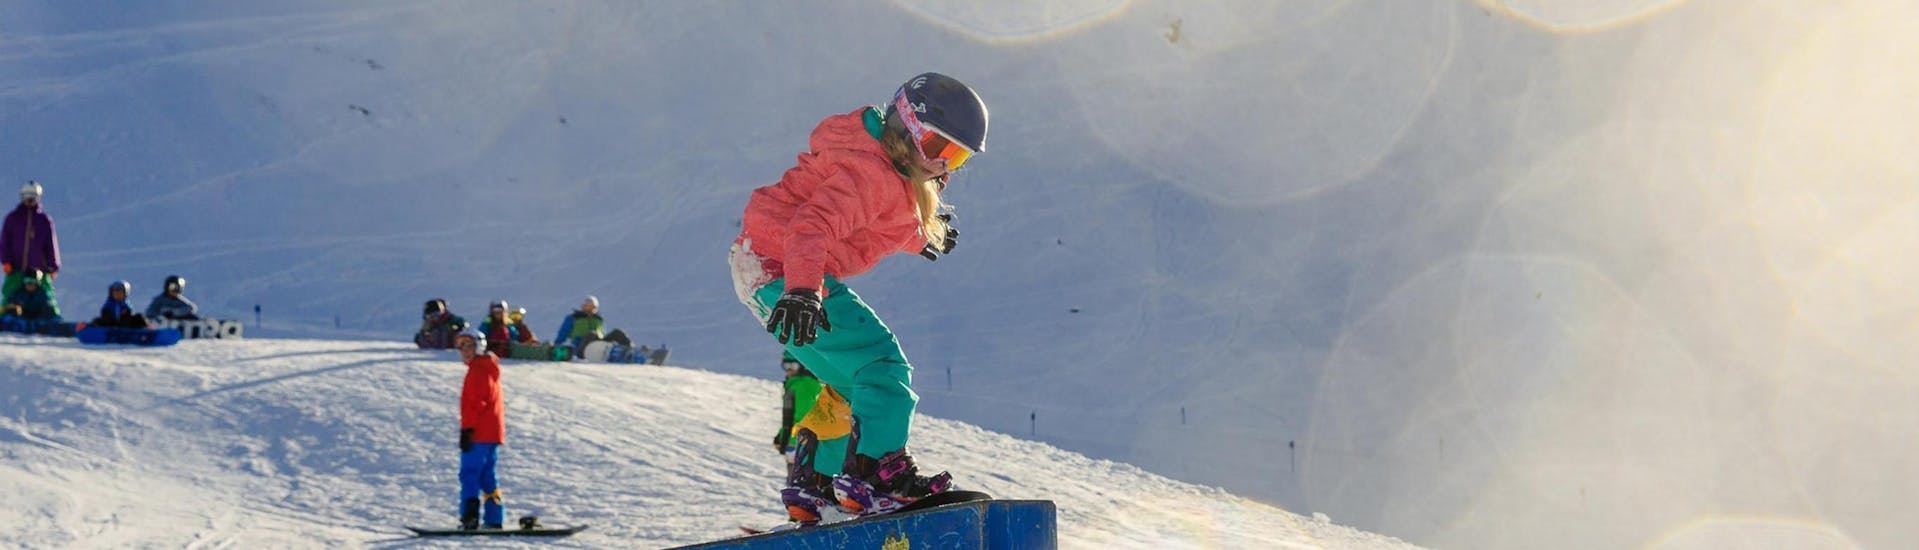 Lezioni di Snowboard a partire da 7 anni per tutti i livelli con Ski School ESKIMOS Saas-Fee.